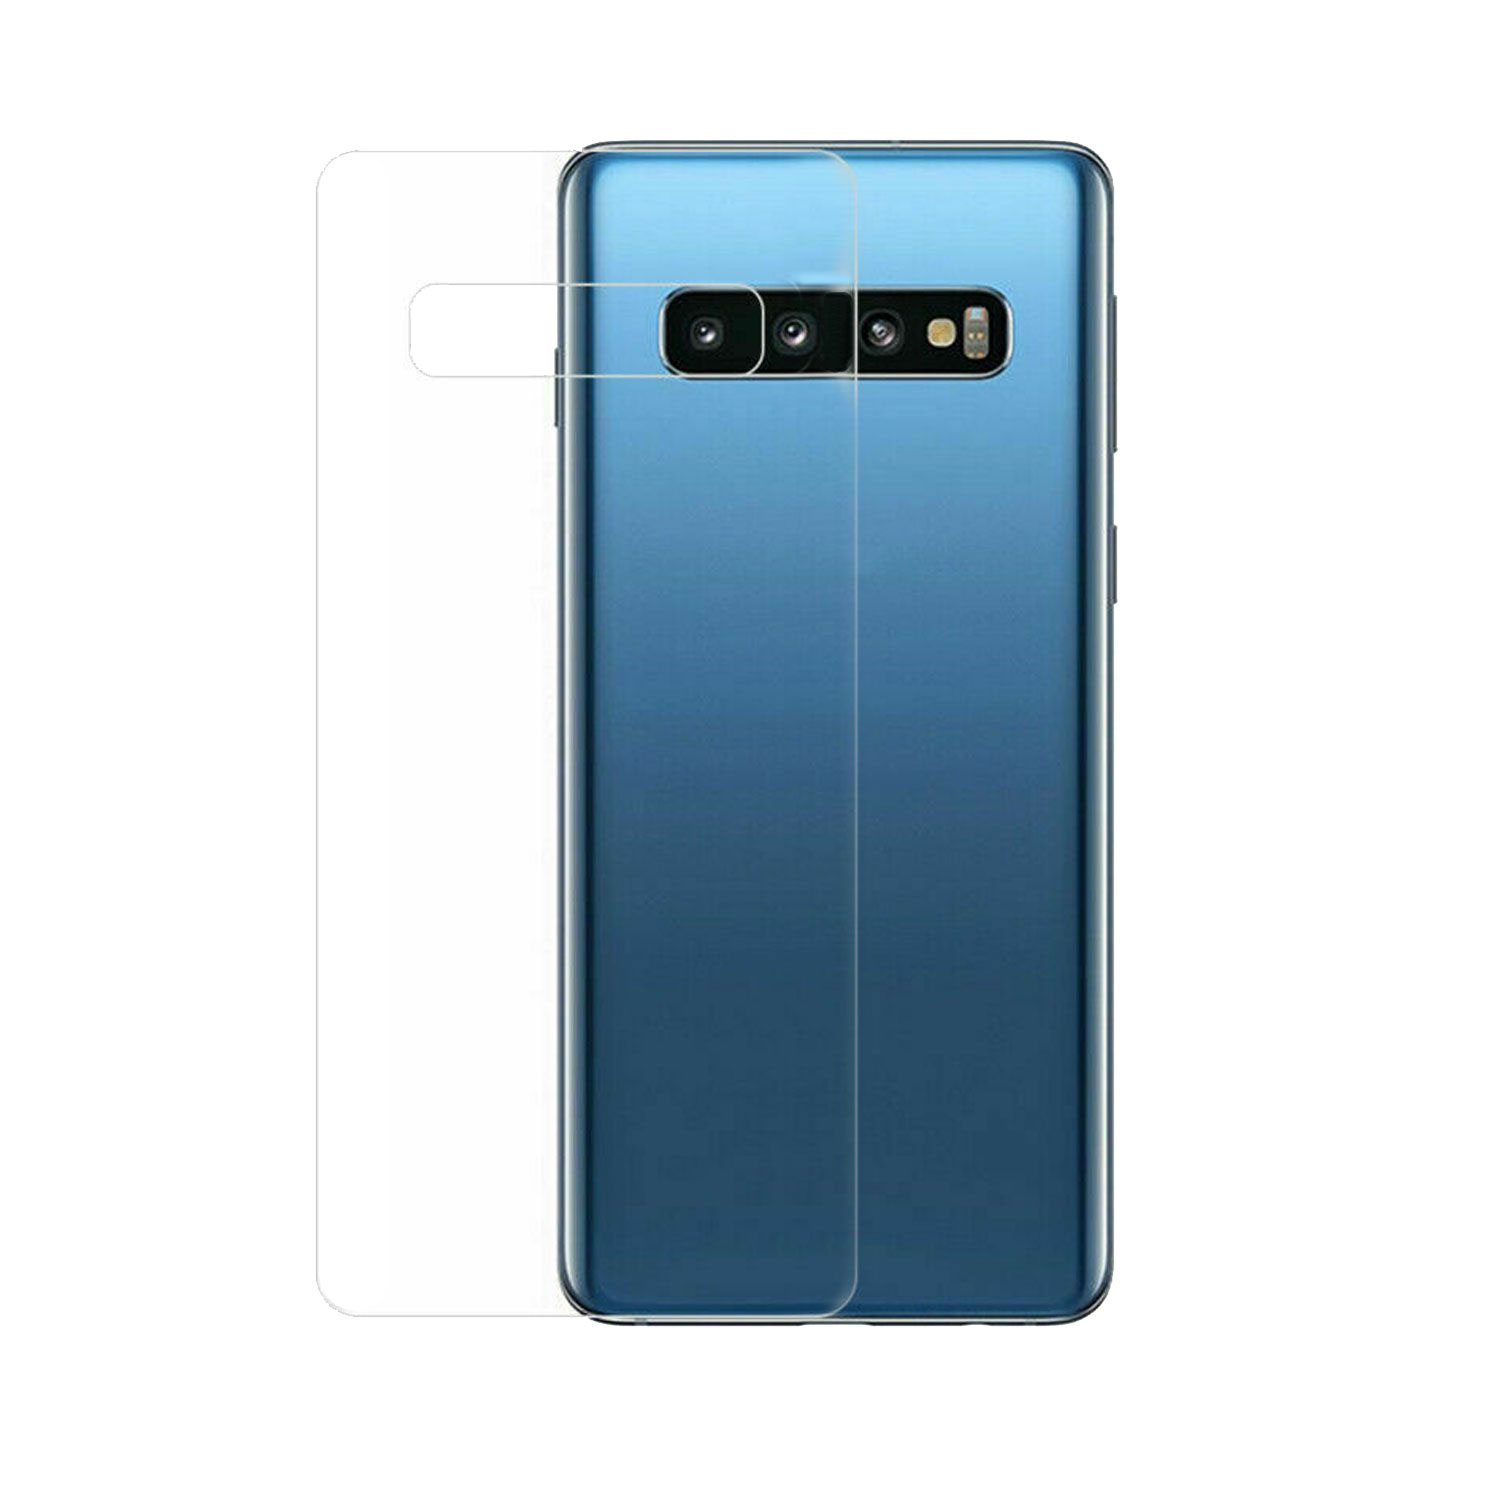 آنباکس محافظ پشت گوشی مدل slim مناسب برای گوشی موبایل سامسونگ Galaxy S10 Plus در تاریخ ۱۳ اسفند ۱۳۹۸